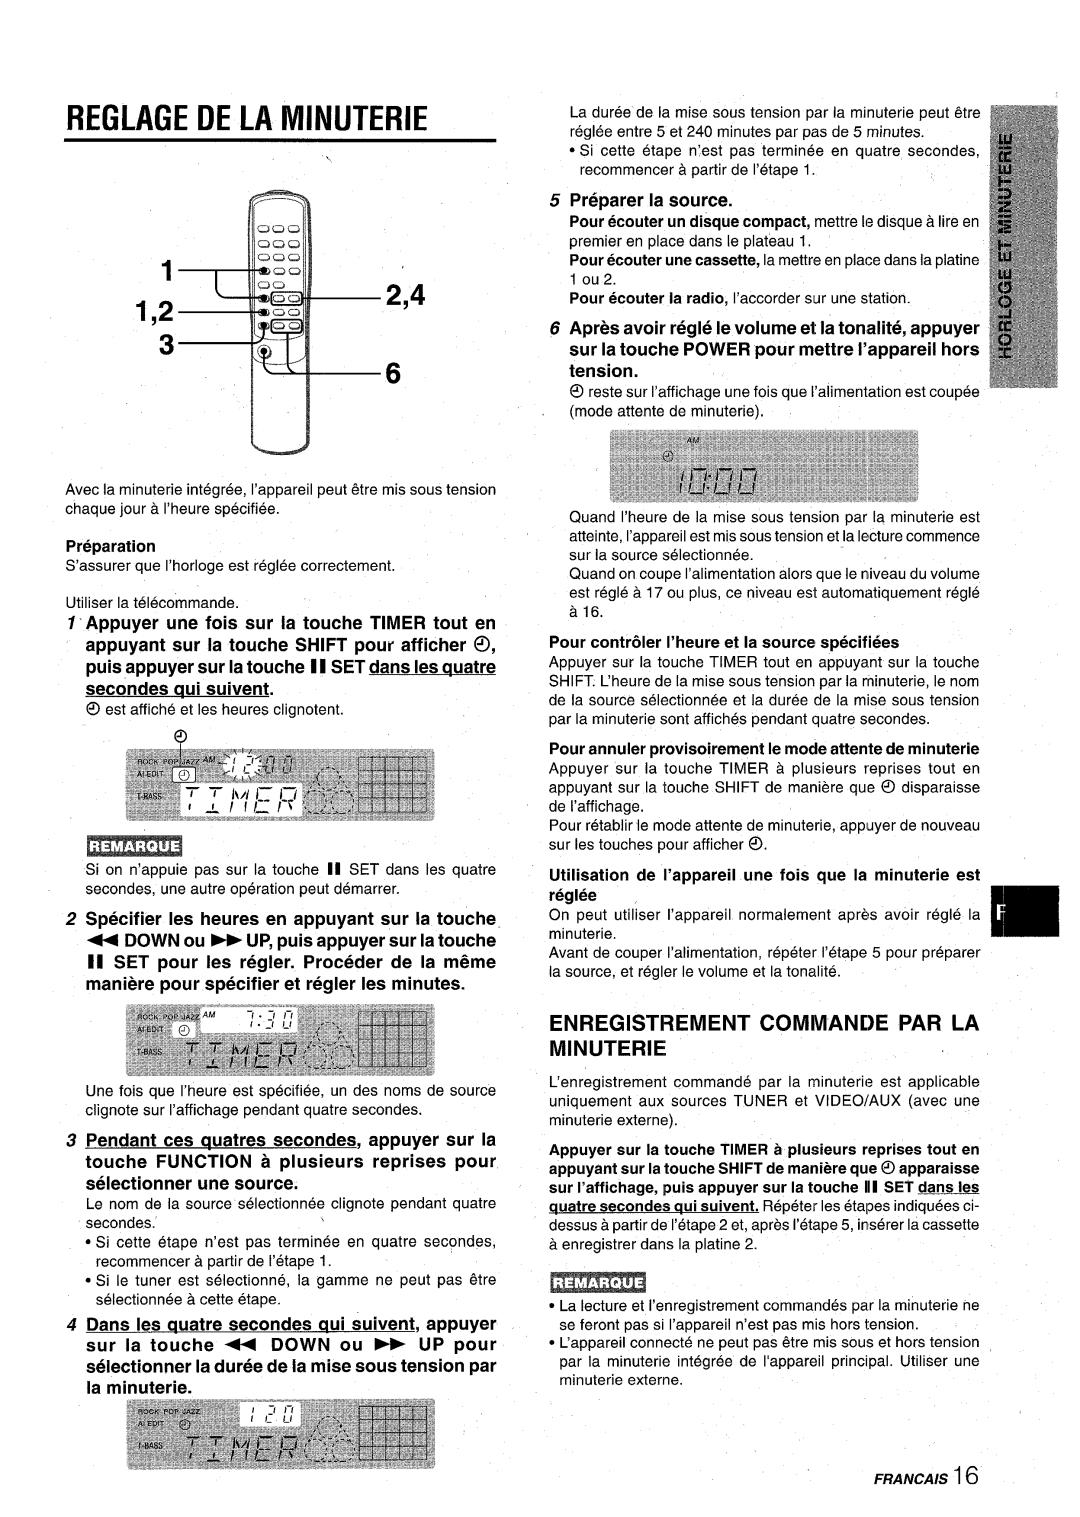 Aiwa CX-NA22 Reglage De La Minuterie, 2,4 1 ,2, Enregistrement Commande Par La Minuterie, Preparer la source, tension 